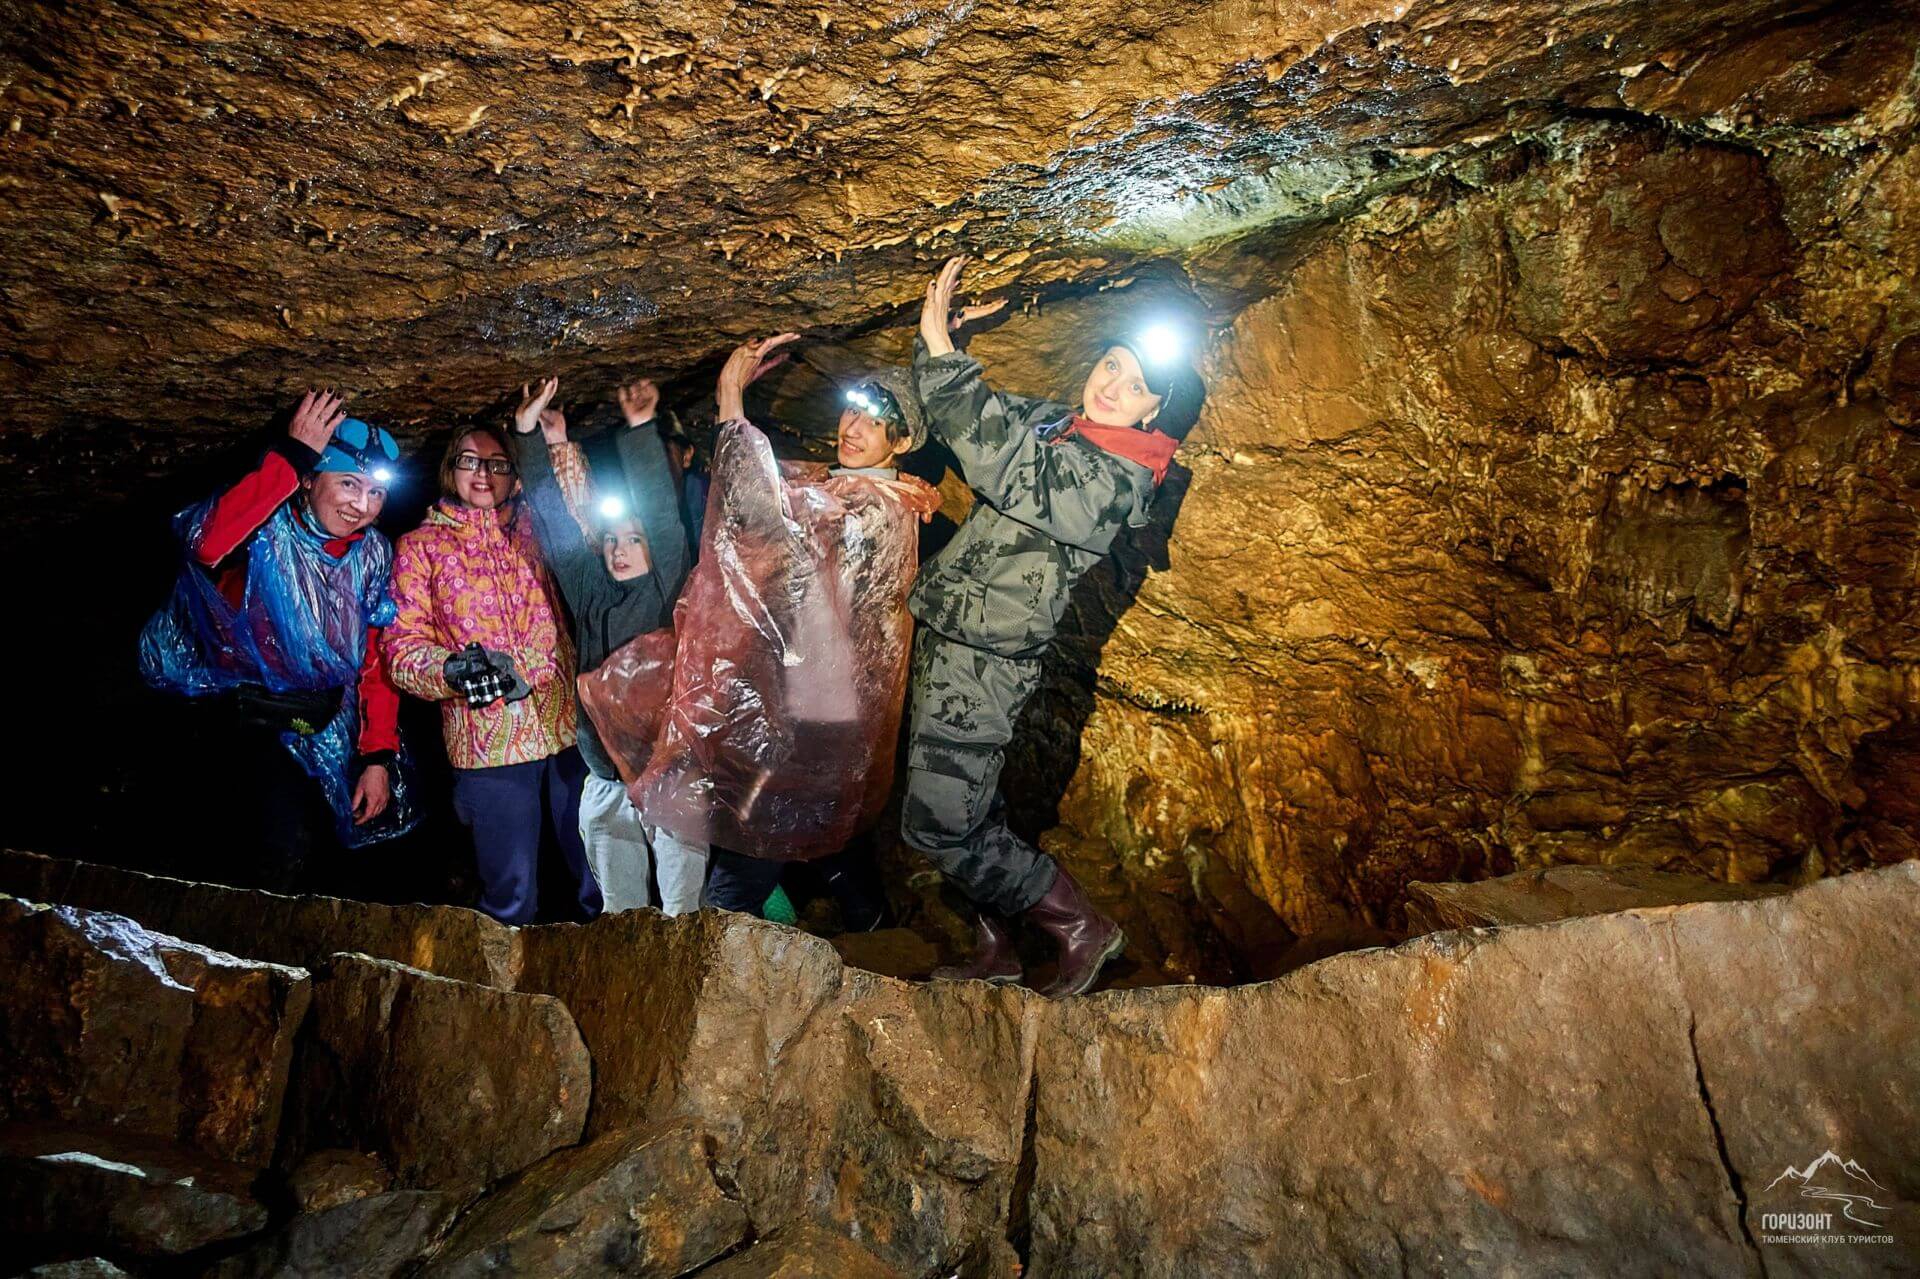 Кургазакская пещера